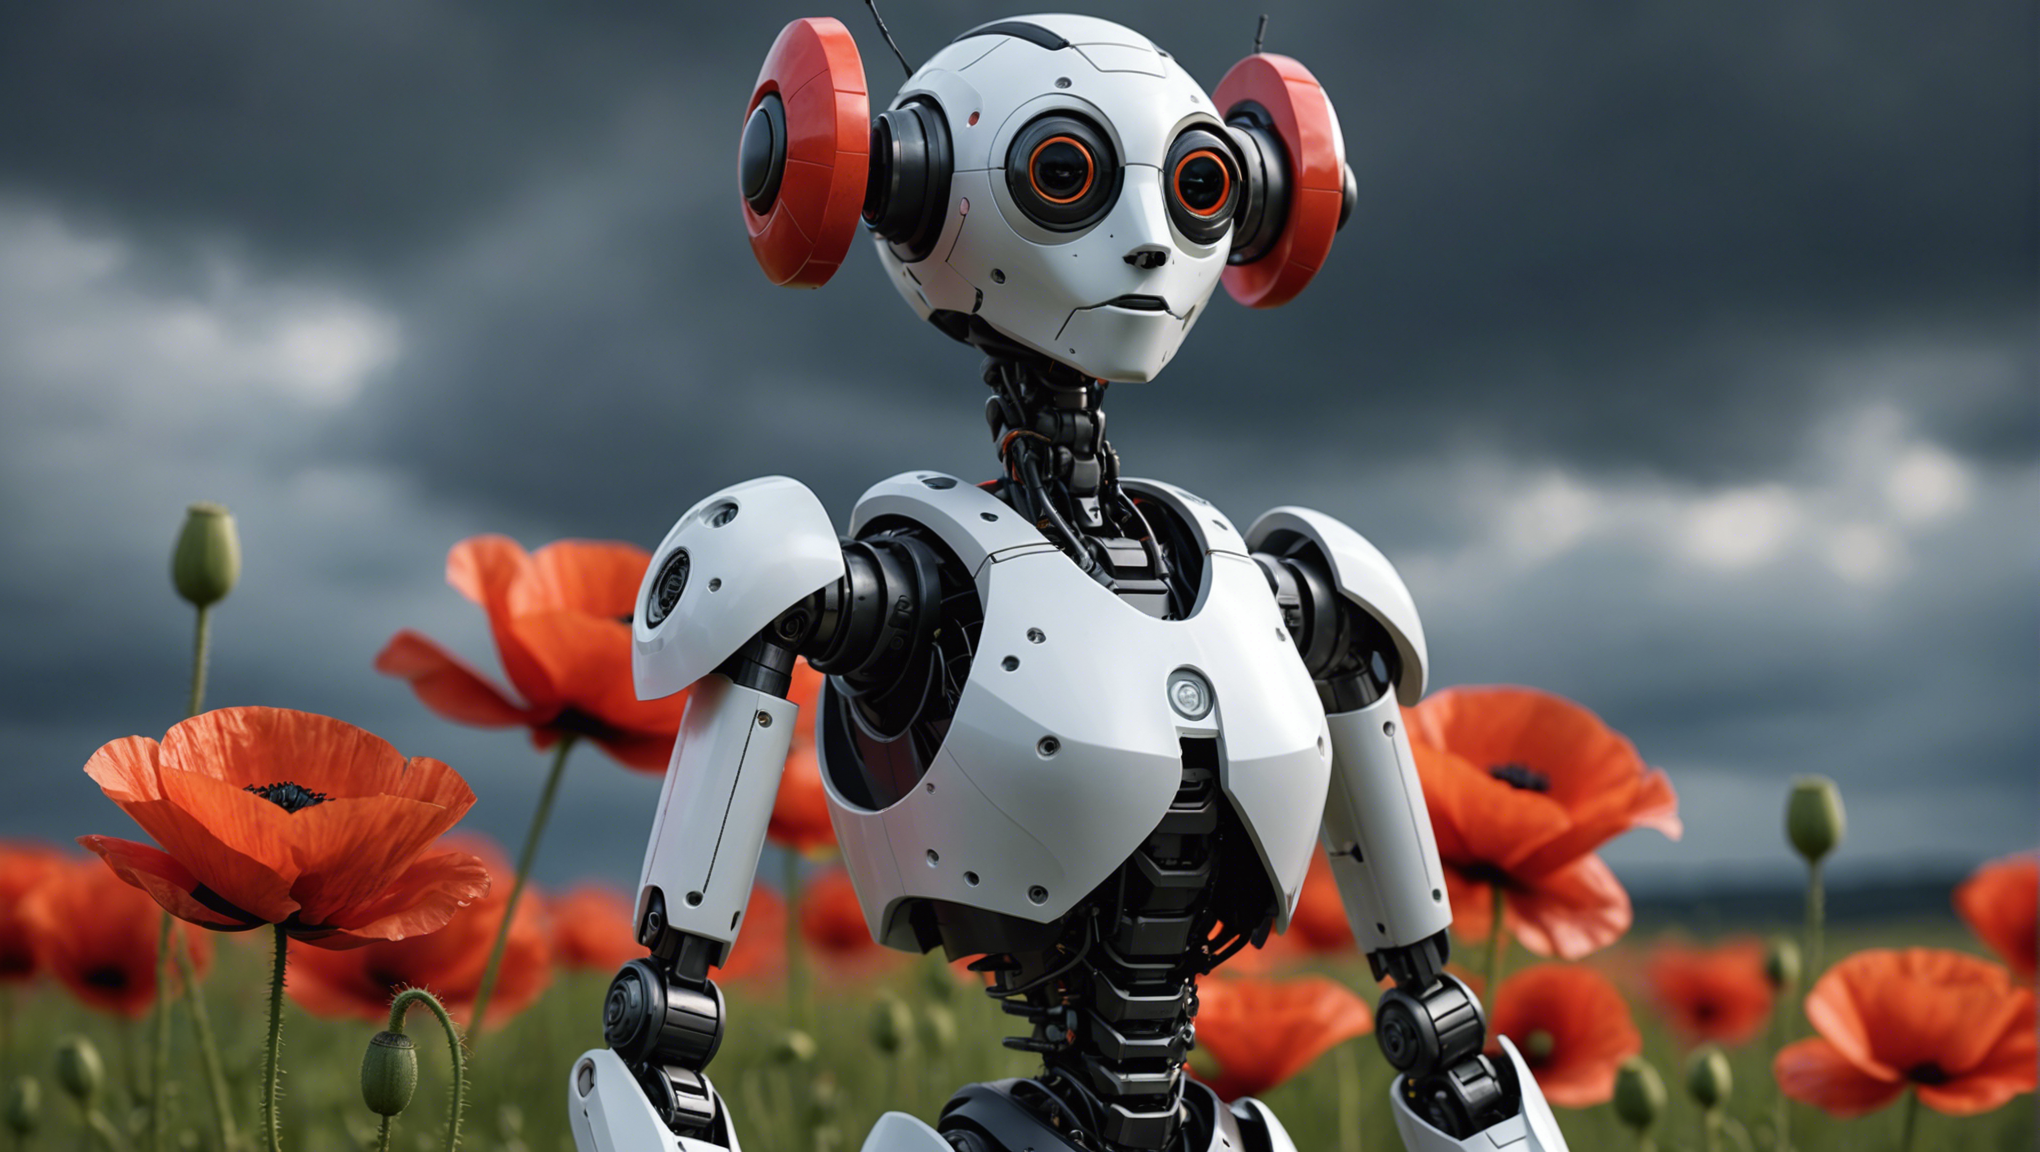 découvrez comment démarrer facilement avec les robots poppy humanoid et poppy torso, et exploiter tout leur potentiel grâce à nos conseils et tutoriels.